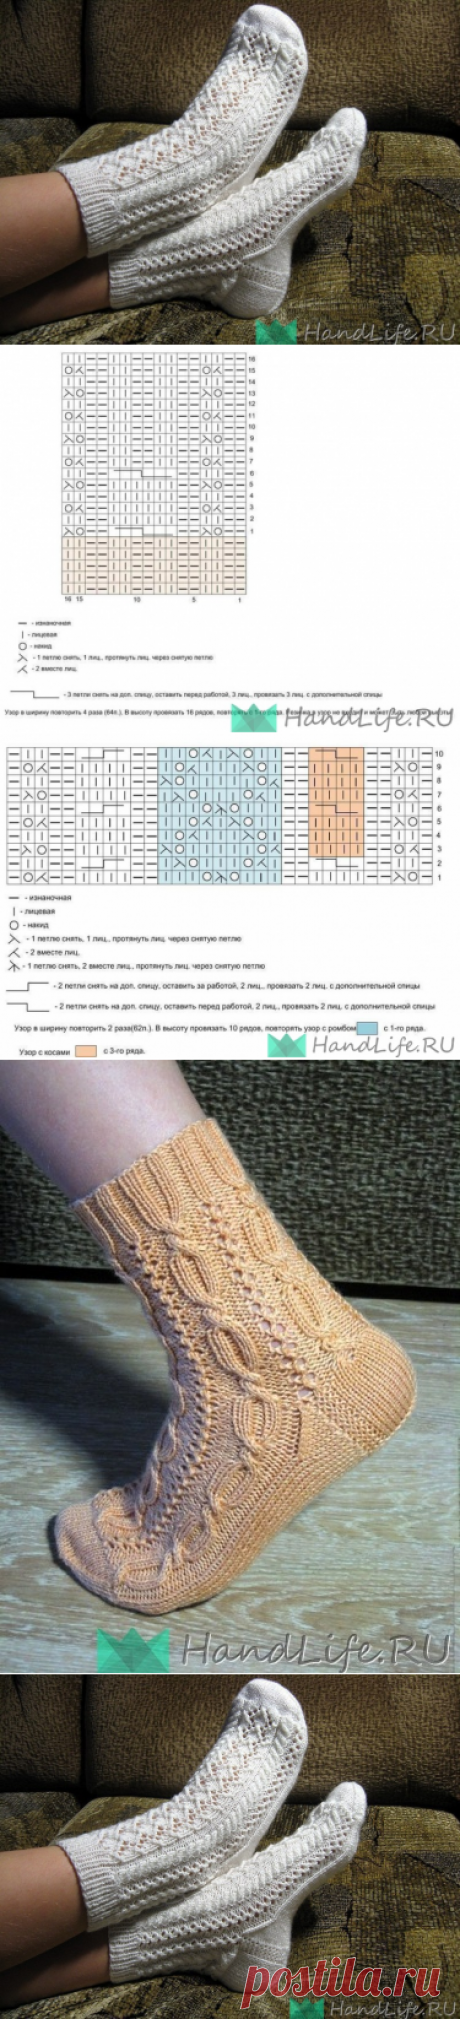 Ажурные носки и схемы. Автор: Лена-Изольда / Вязание